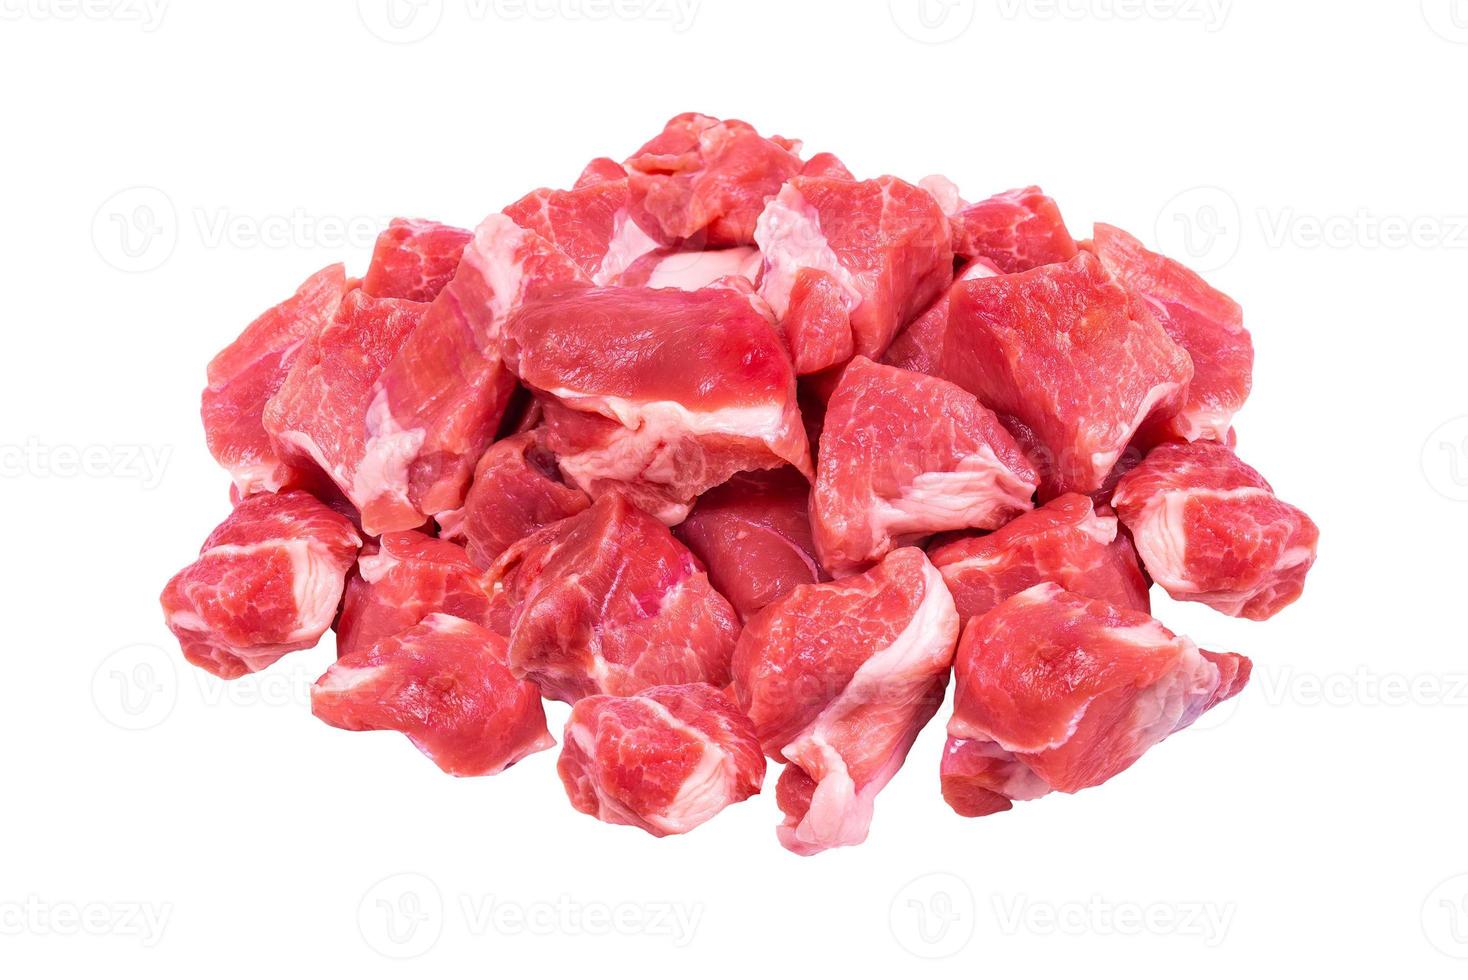 rohes Fleisch Rindfleischsuppe Premium, gewürfelt isoliert auf weißem Hintergrund foto